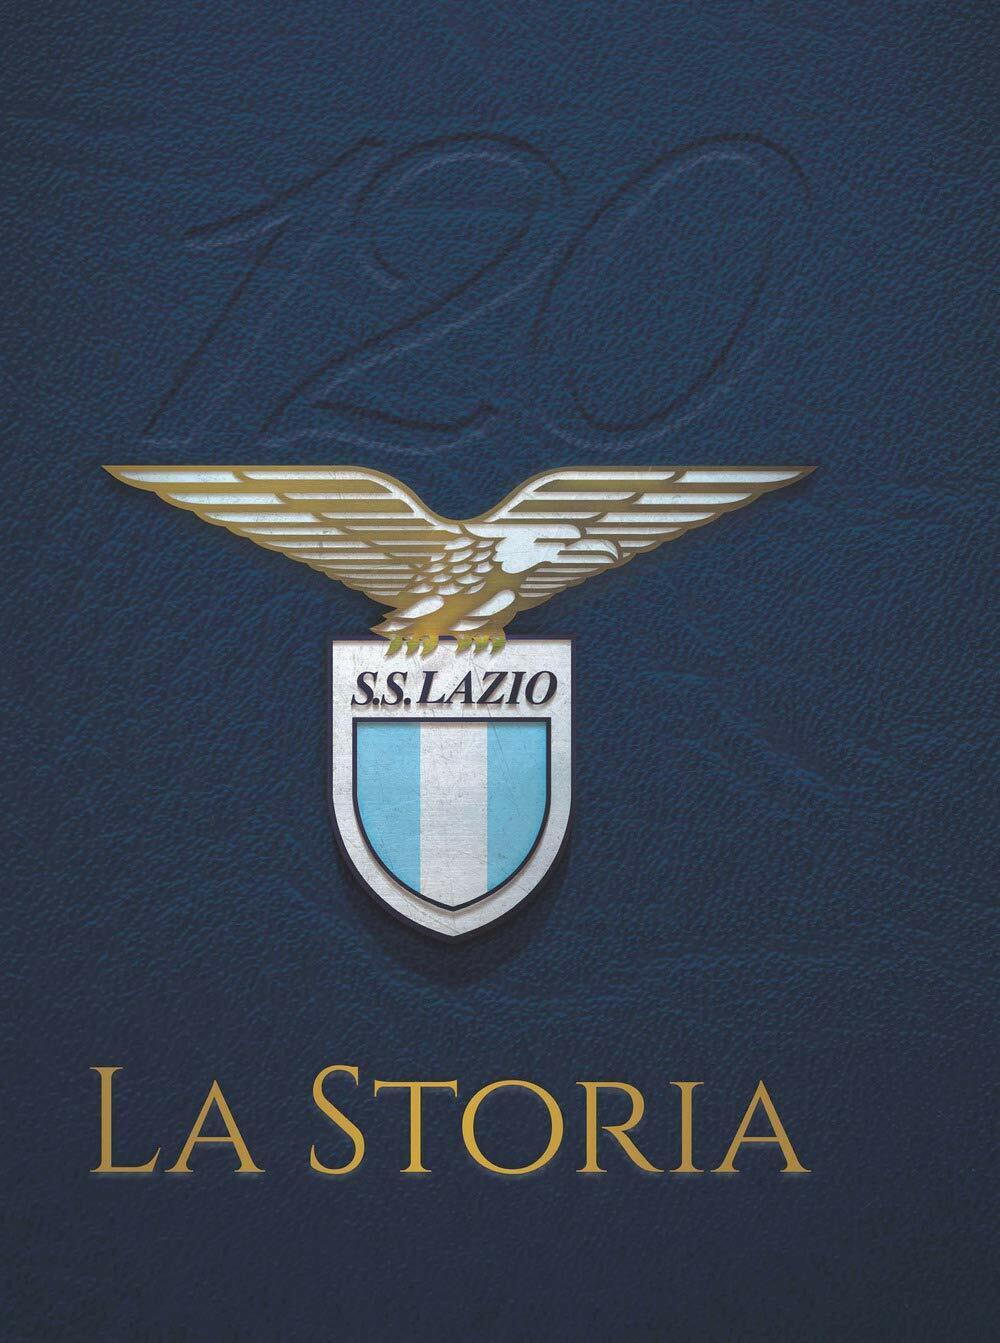 120 S. S. Lazio. La storia - Fabio Argentini - Goalbook, 2019